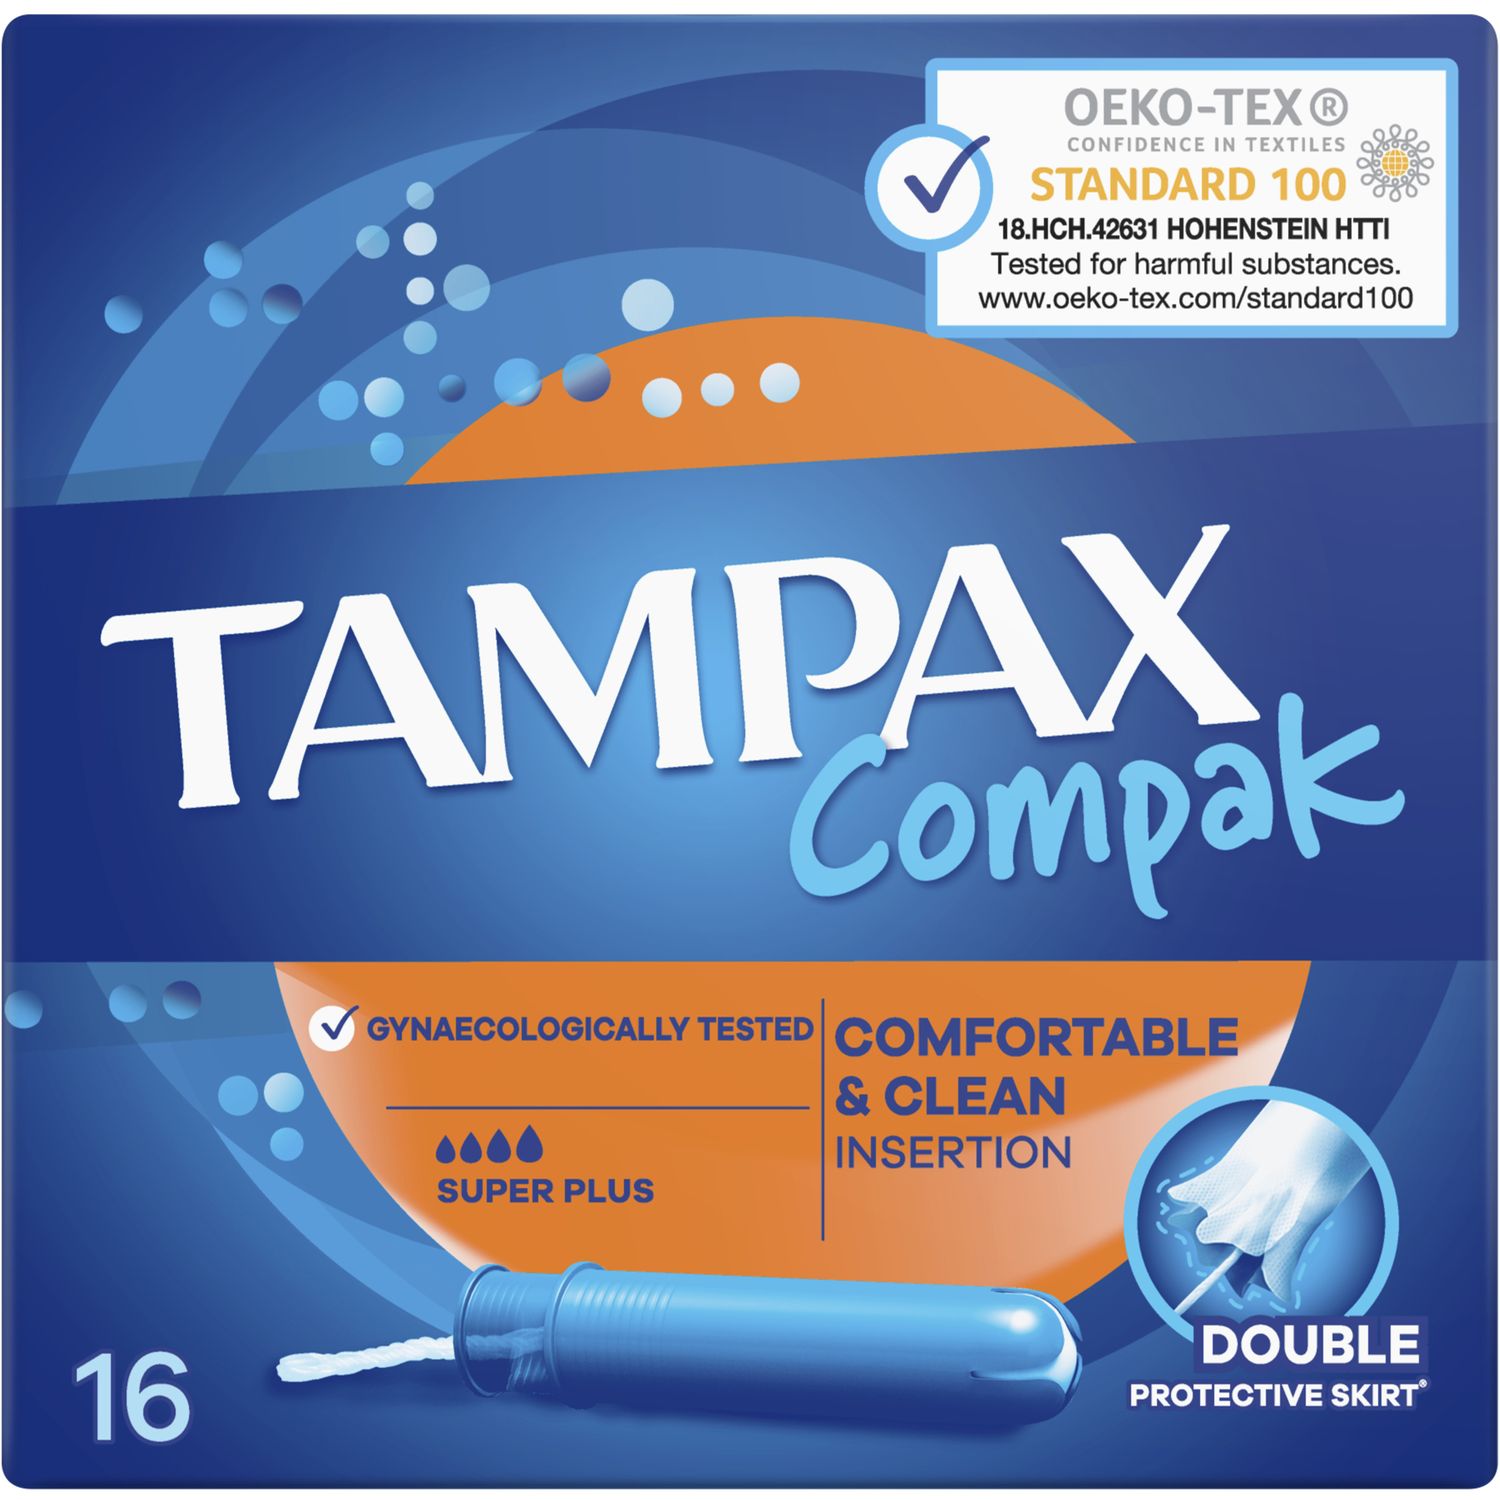 Тампоны Tampax Compak Super Plus с аппликатором 16 шт. - фото 2